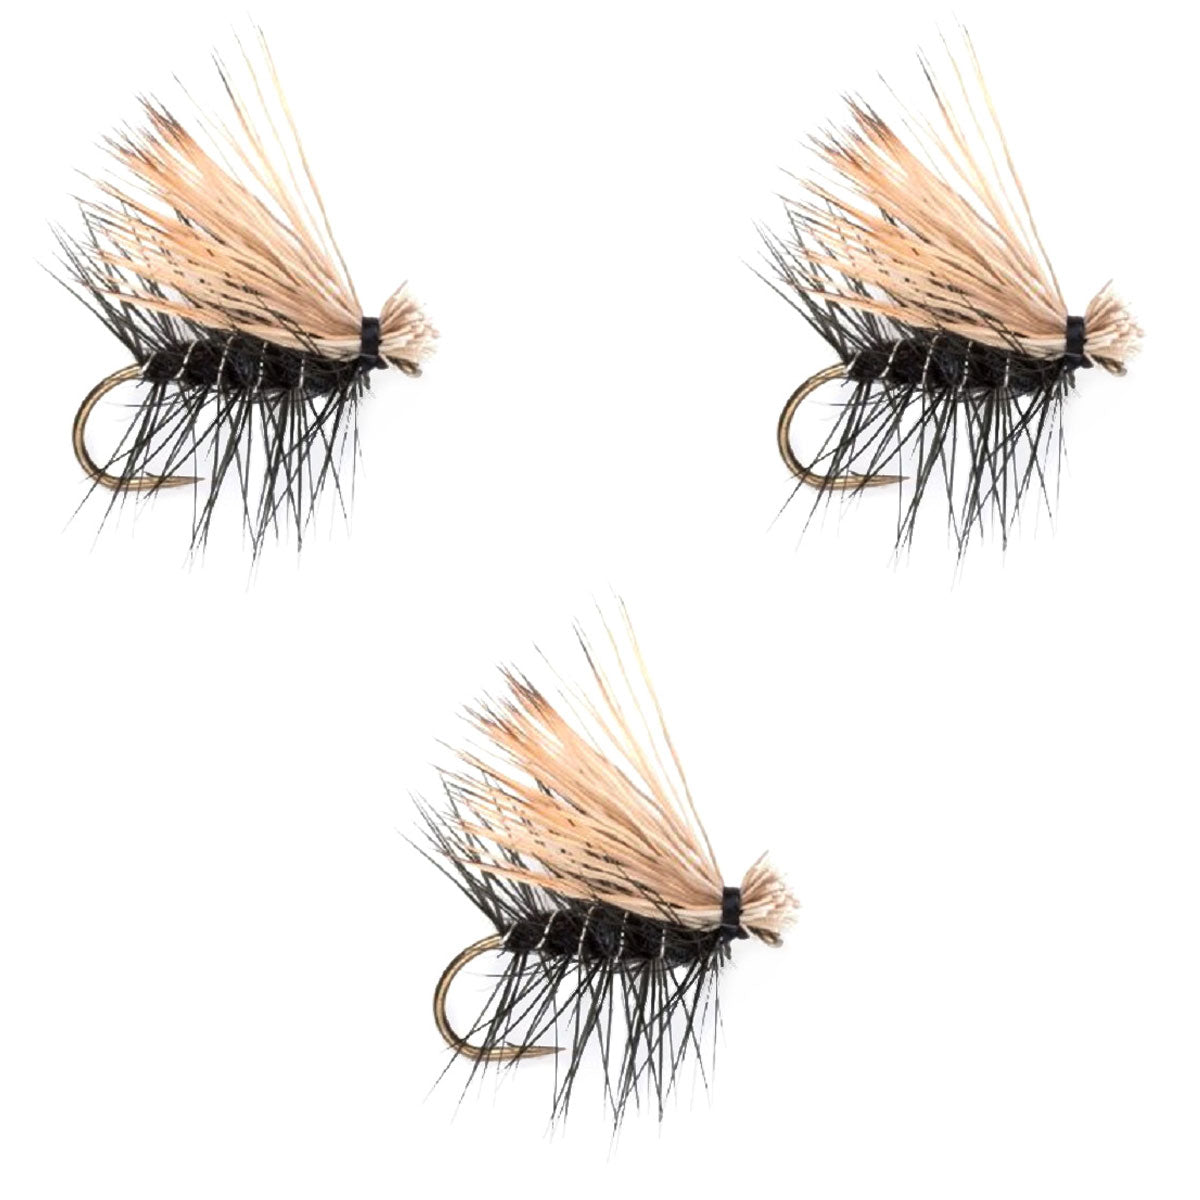 Paquete de 3 moscas secas para trucha Caddis Classic de pelo de alce negro, tamaño 12